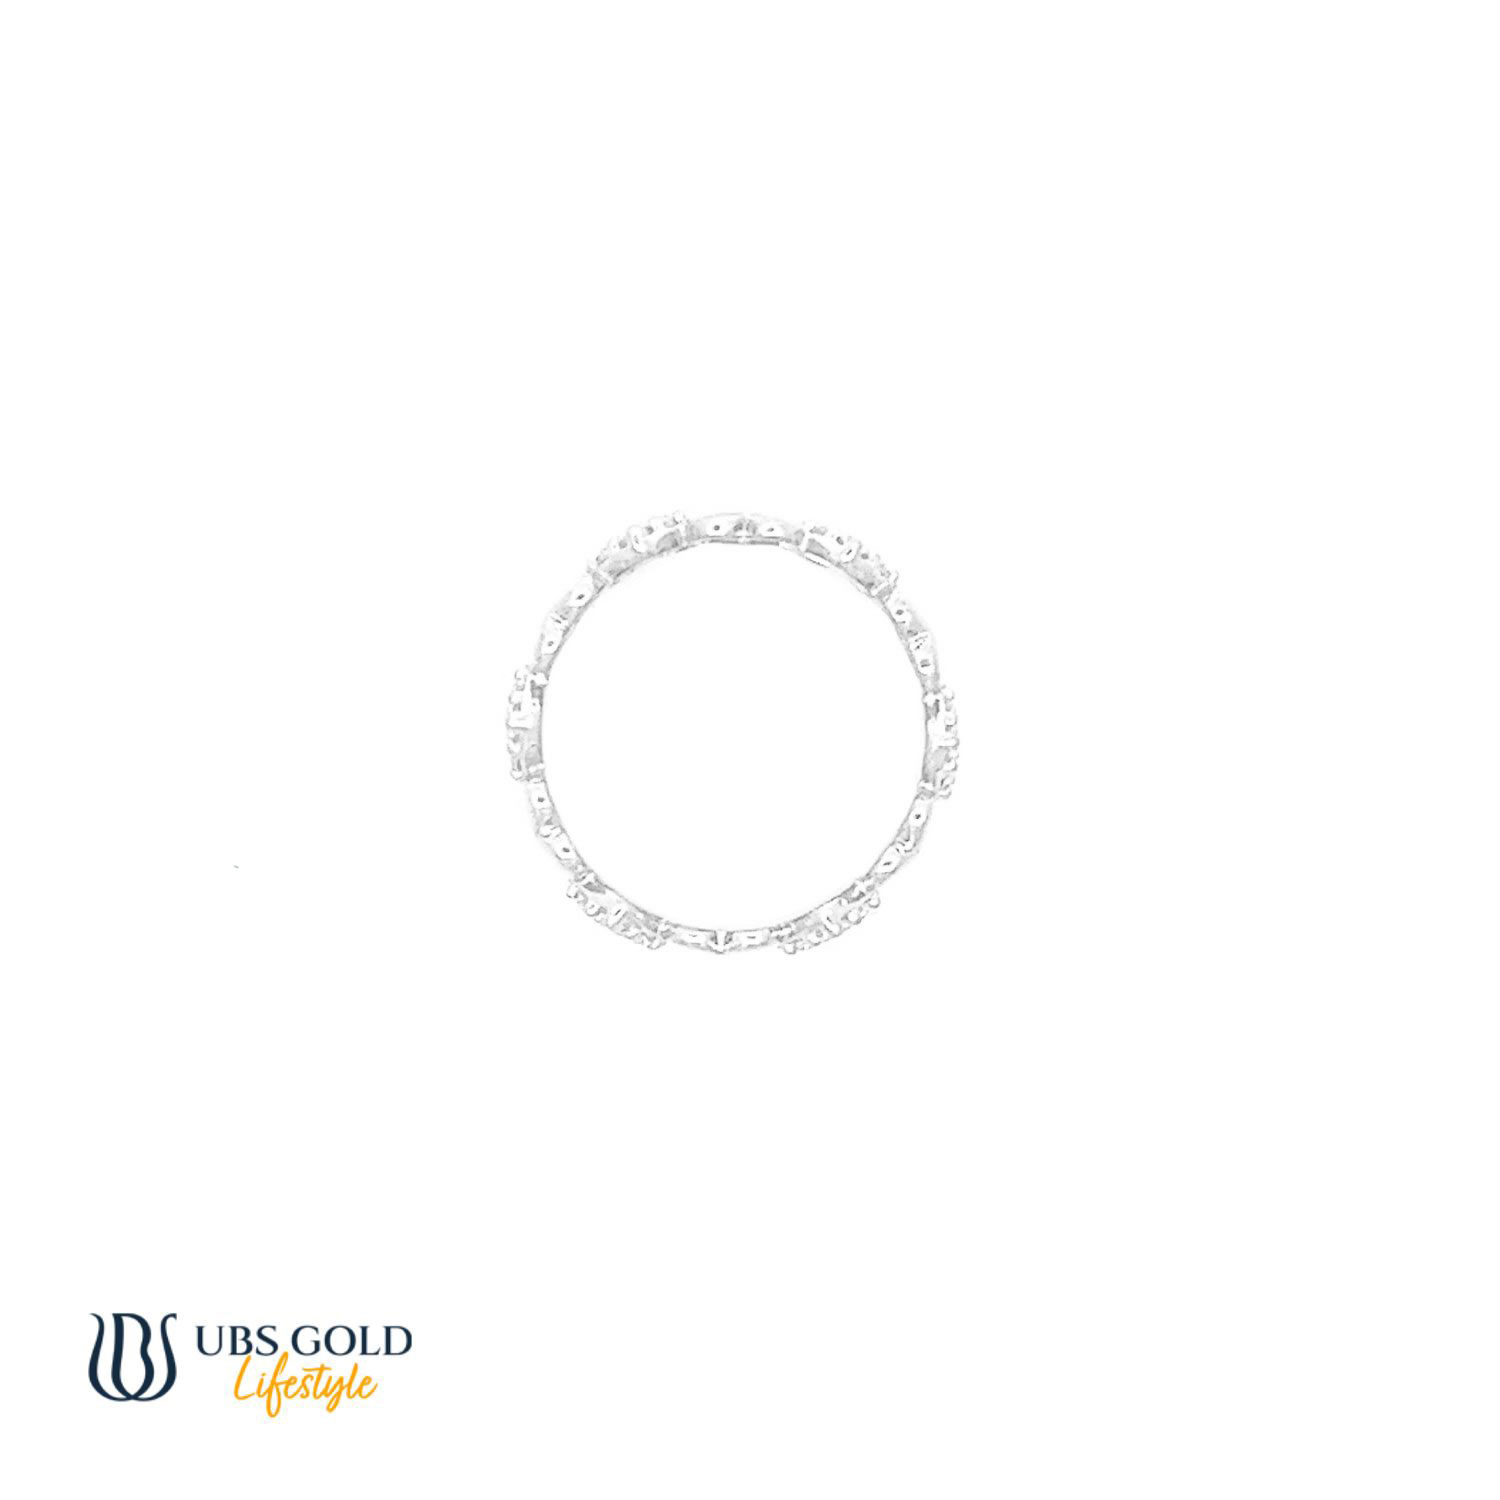 UBS Gold Cincin Emas - Cc14483 - 17K